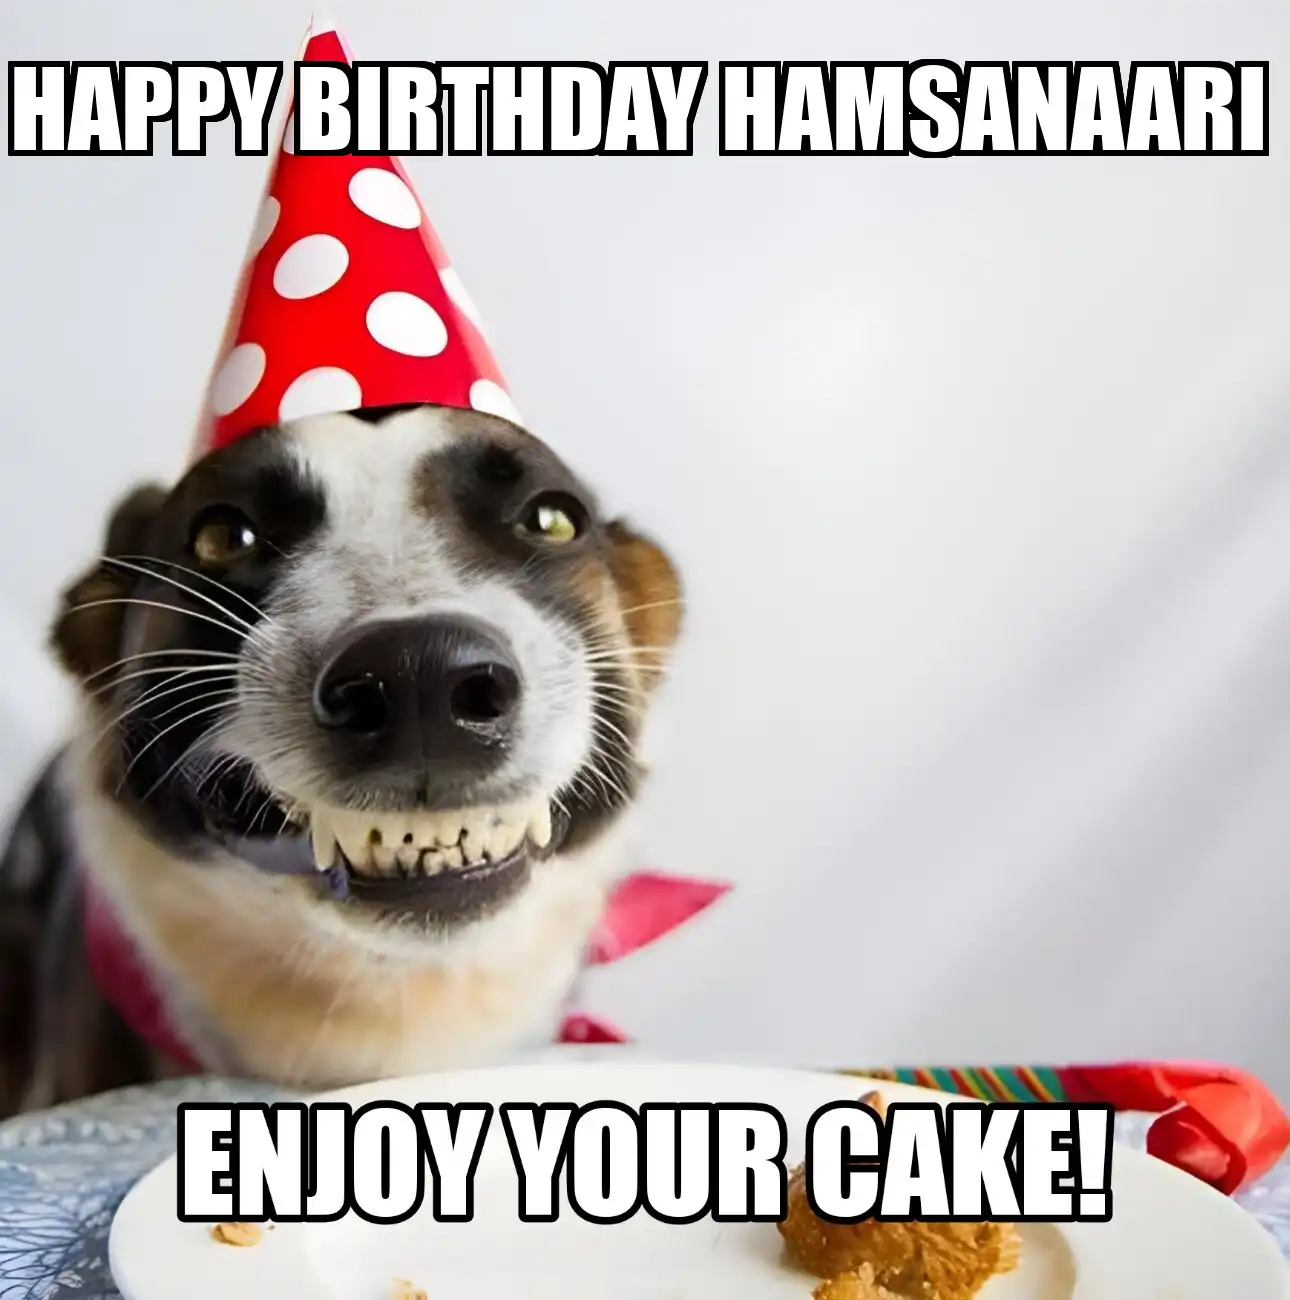 Happy Birthday Hamsanaari Enjoy Your Cake Dog Meme